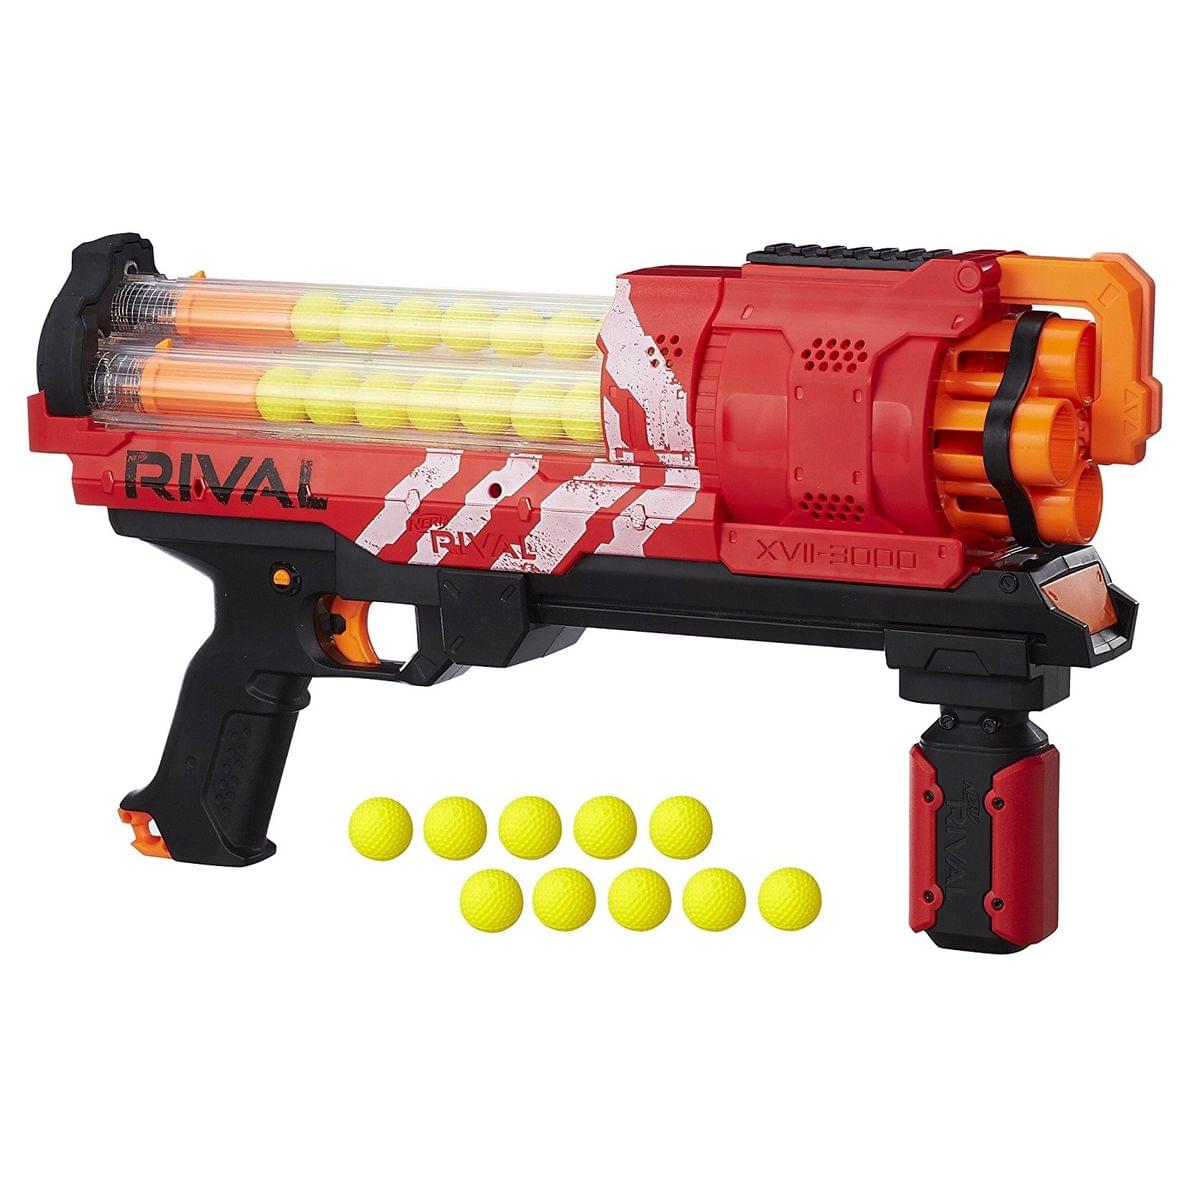 Nerf Rival Artemis XVII-3000 Blaster, Red